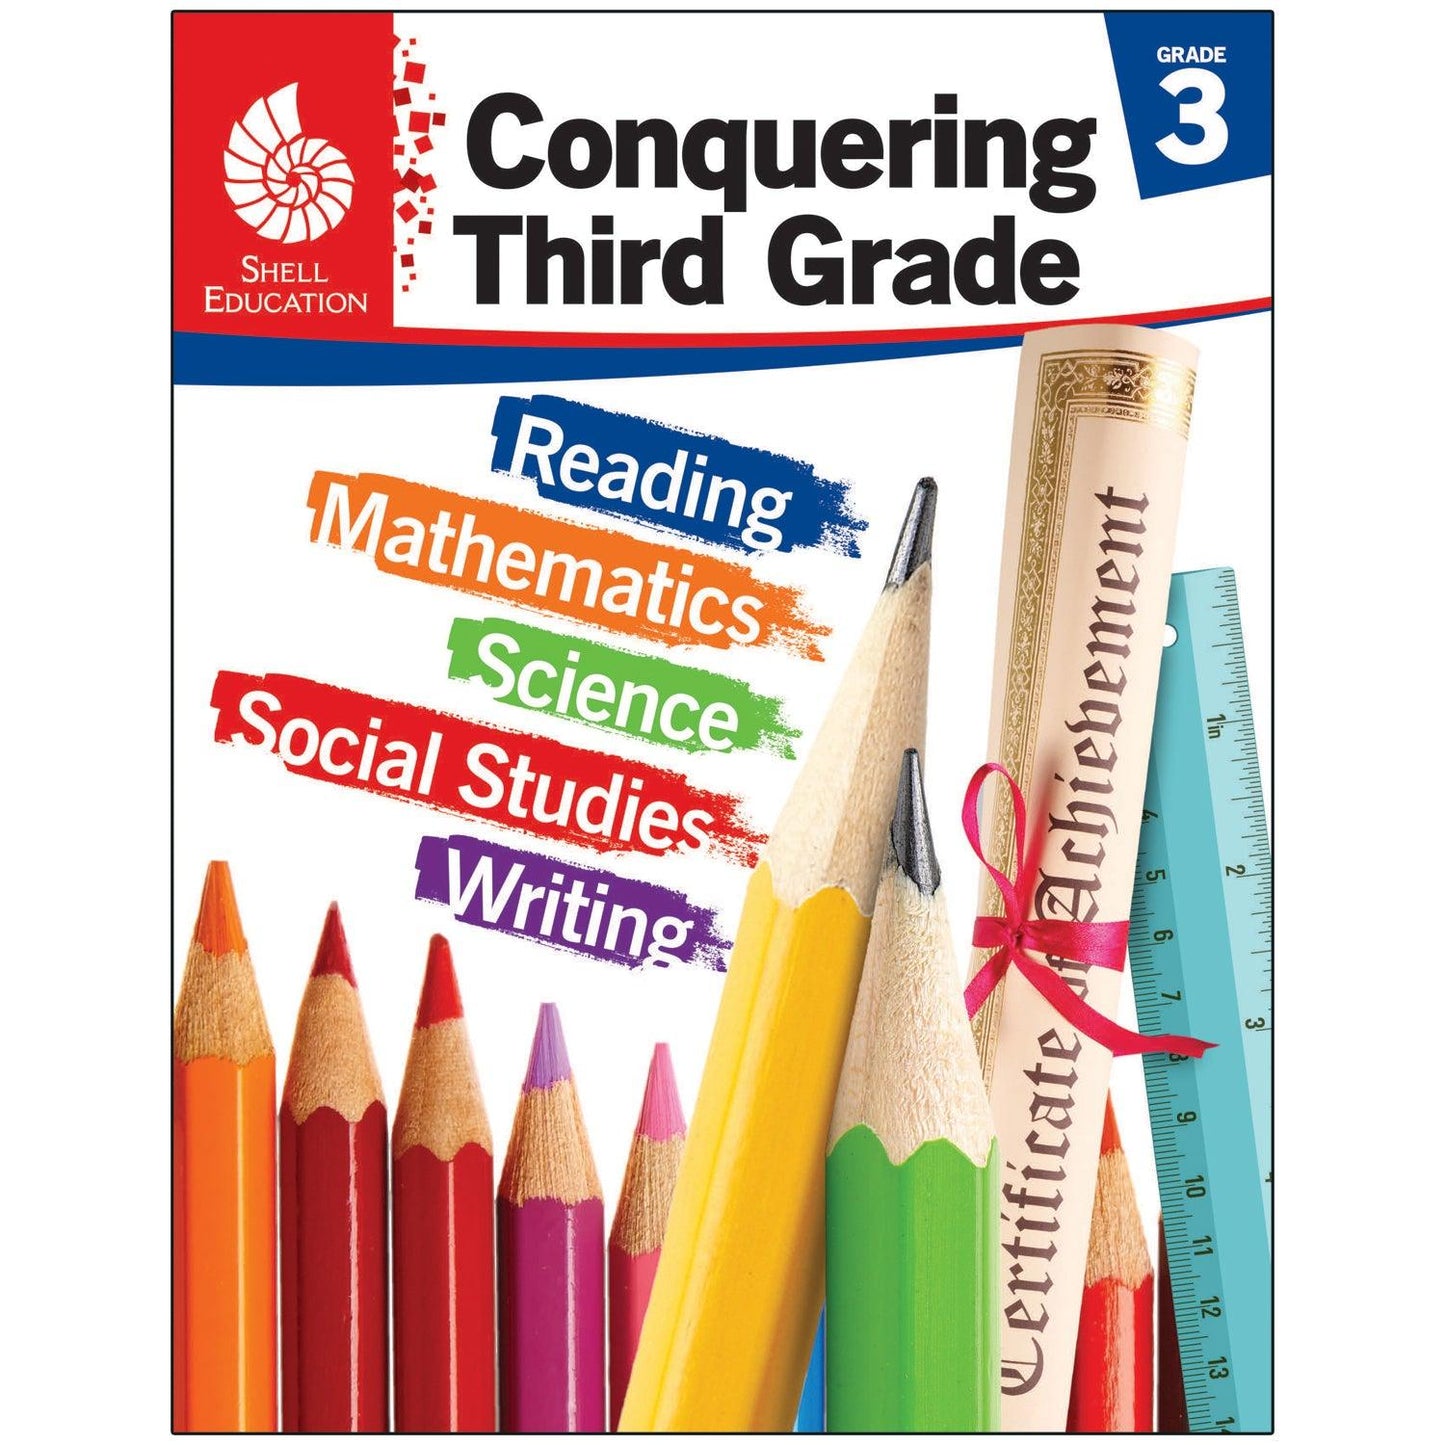 Conquering Third Grade - Loomini